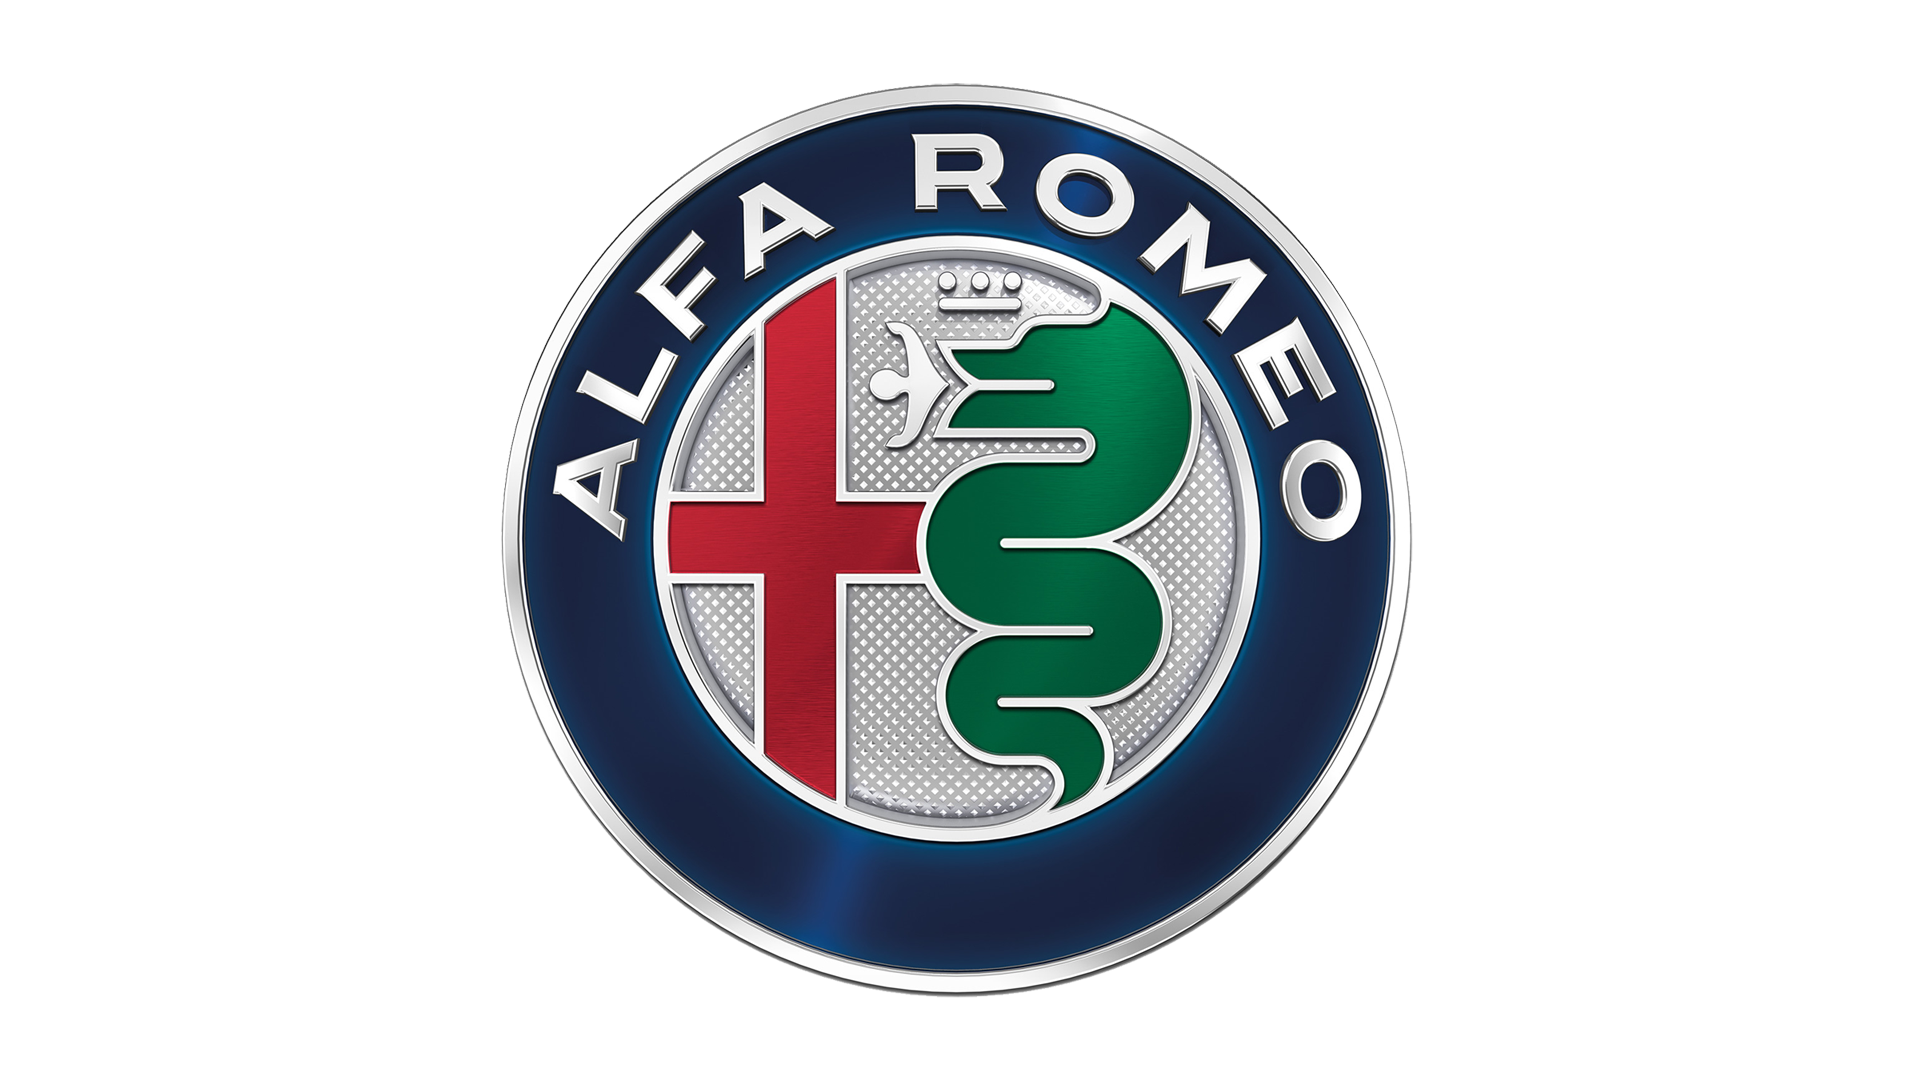 http://www.carlogos.org/logo/Alfa-Romeo-logo-2015-1920x1080.png